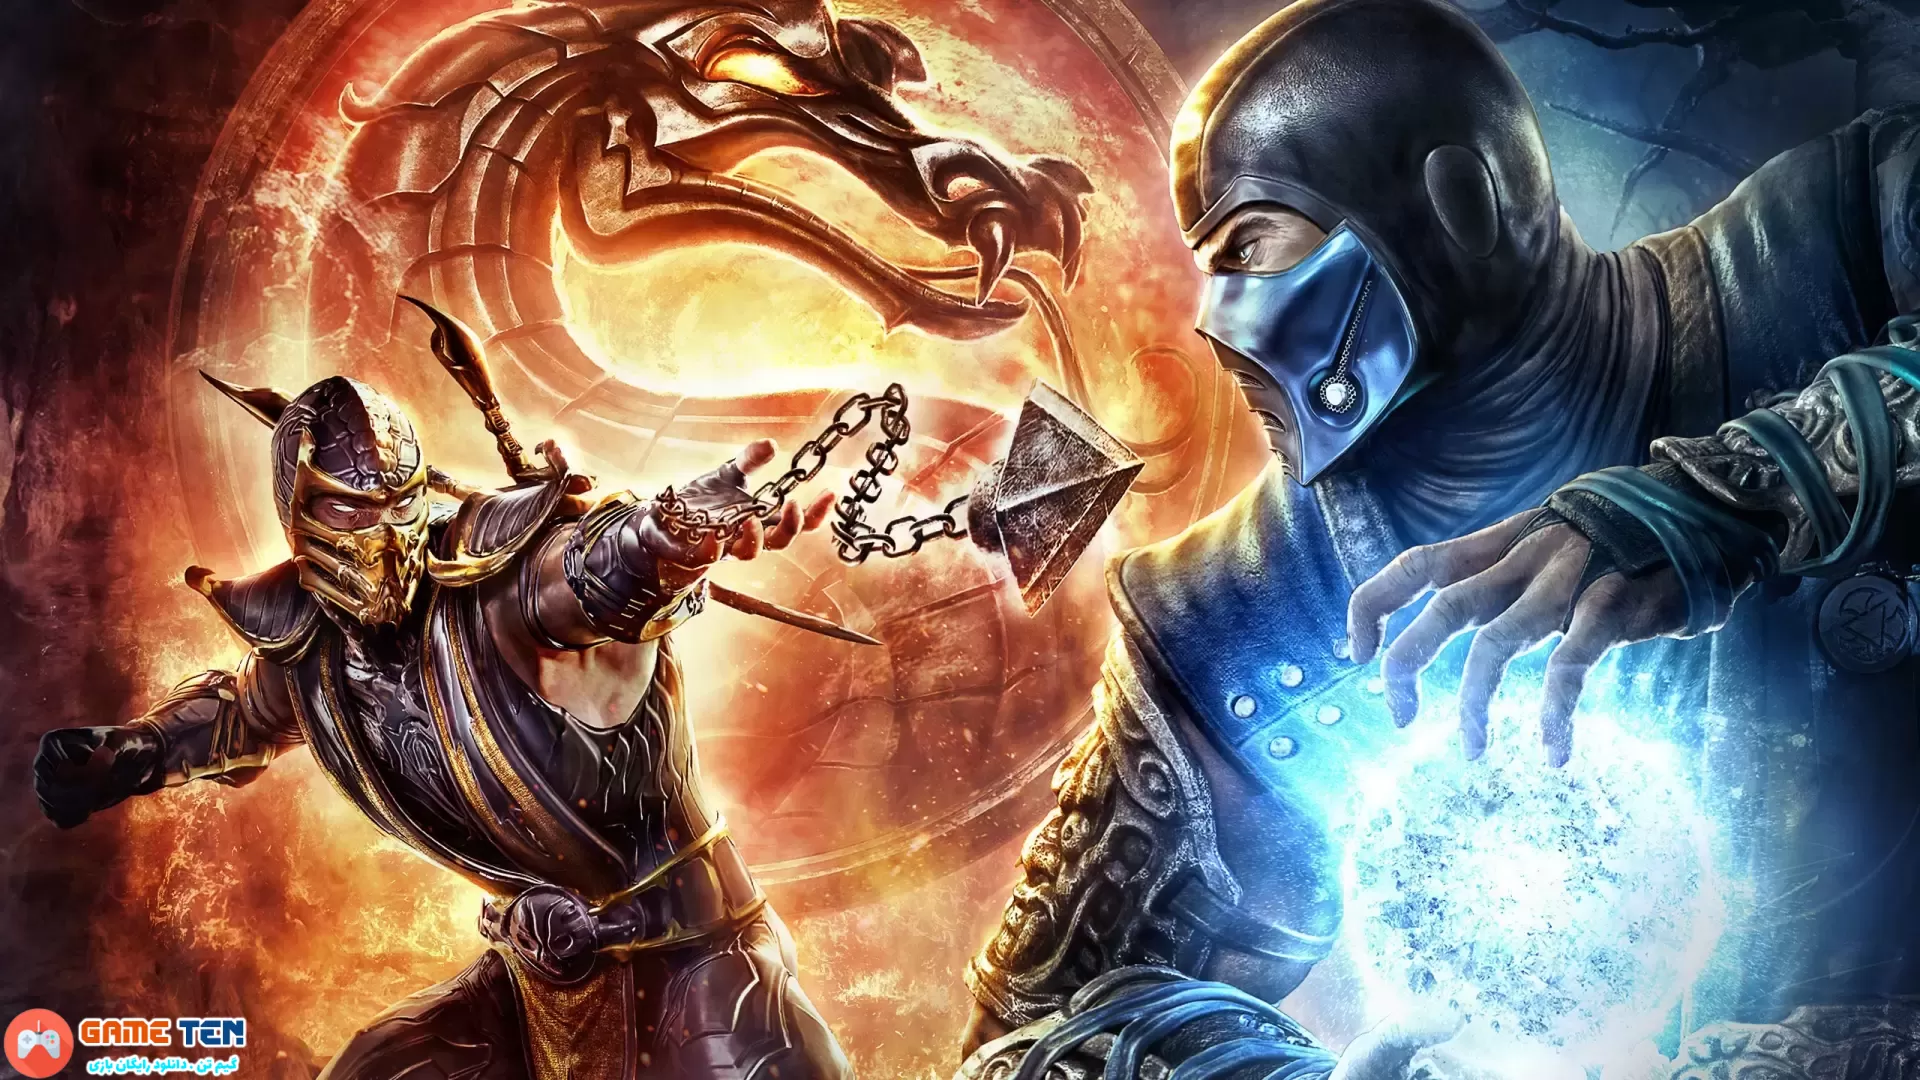 دانلود Mortal Kombat 9: Komplete Edition - بازی مورتال کامبت 9 برای کامپیوتر